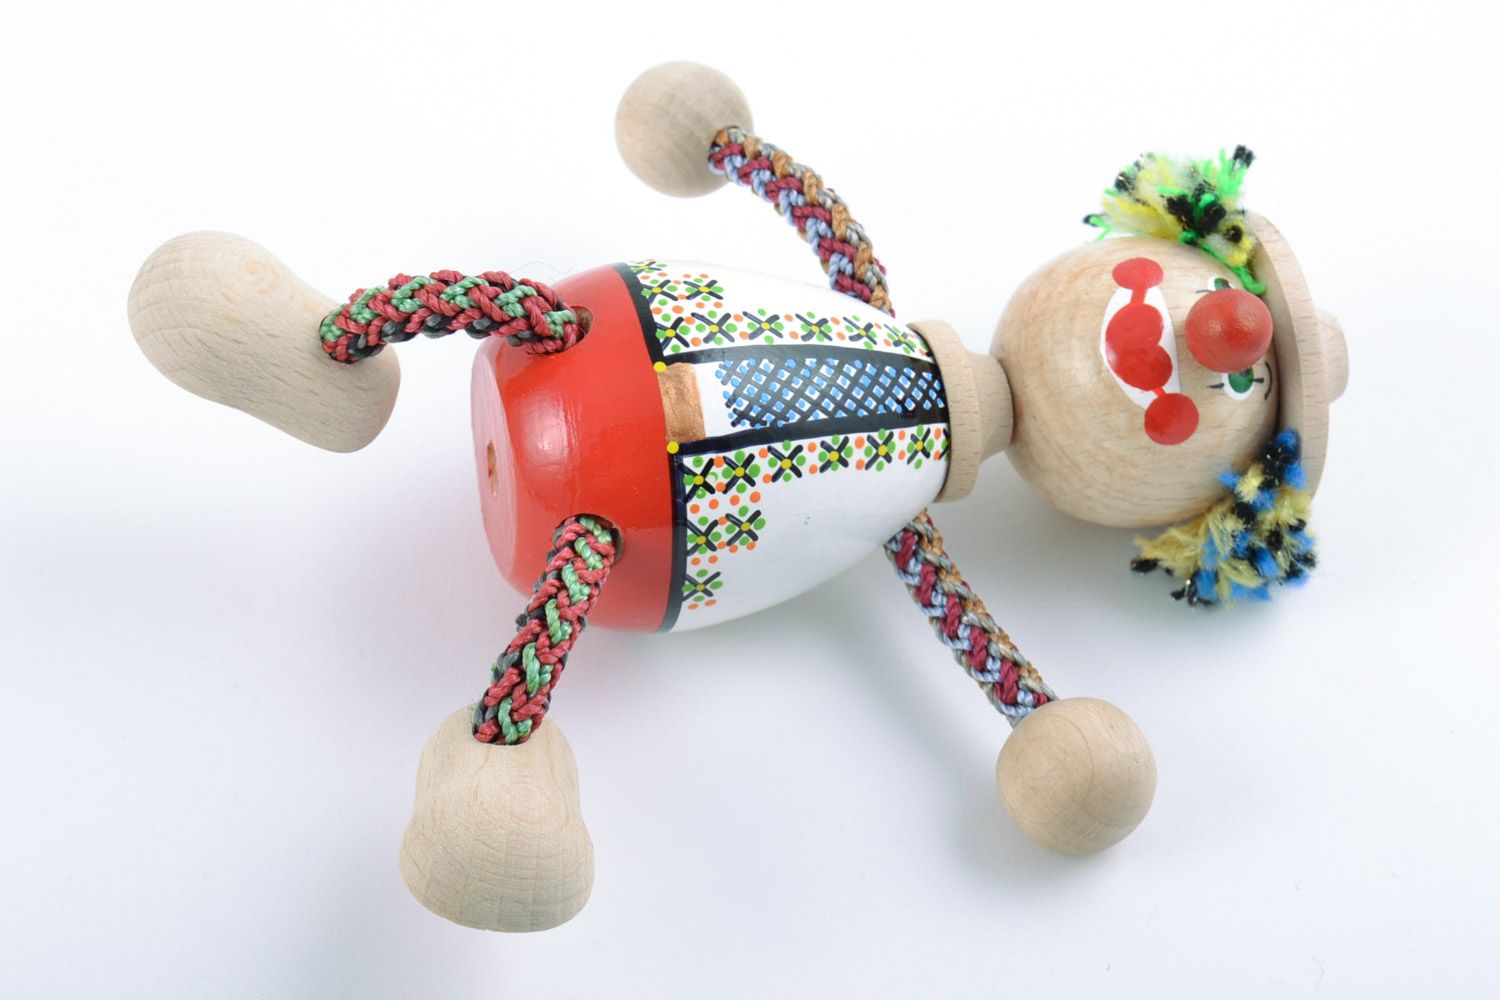 Handmade Öko Spielzeug Clown bunt bemalt originell klein für Kinderspiele foto 4